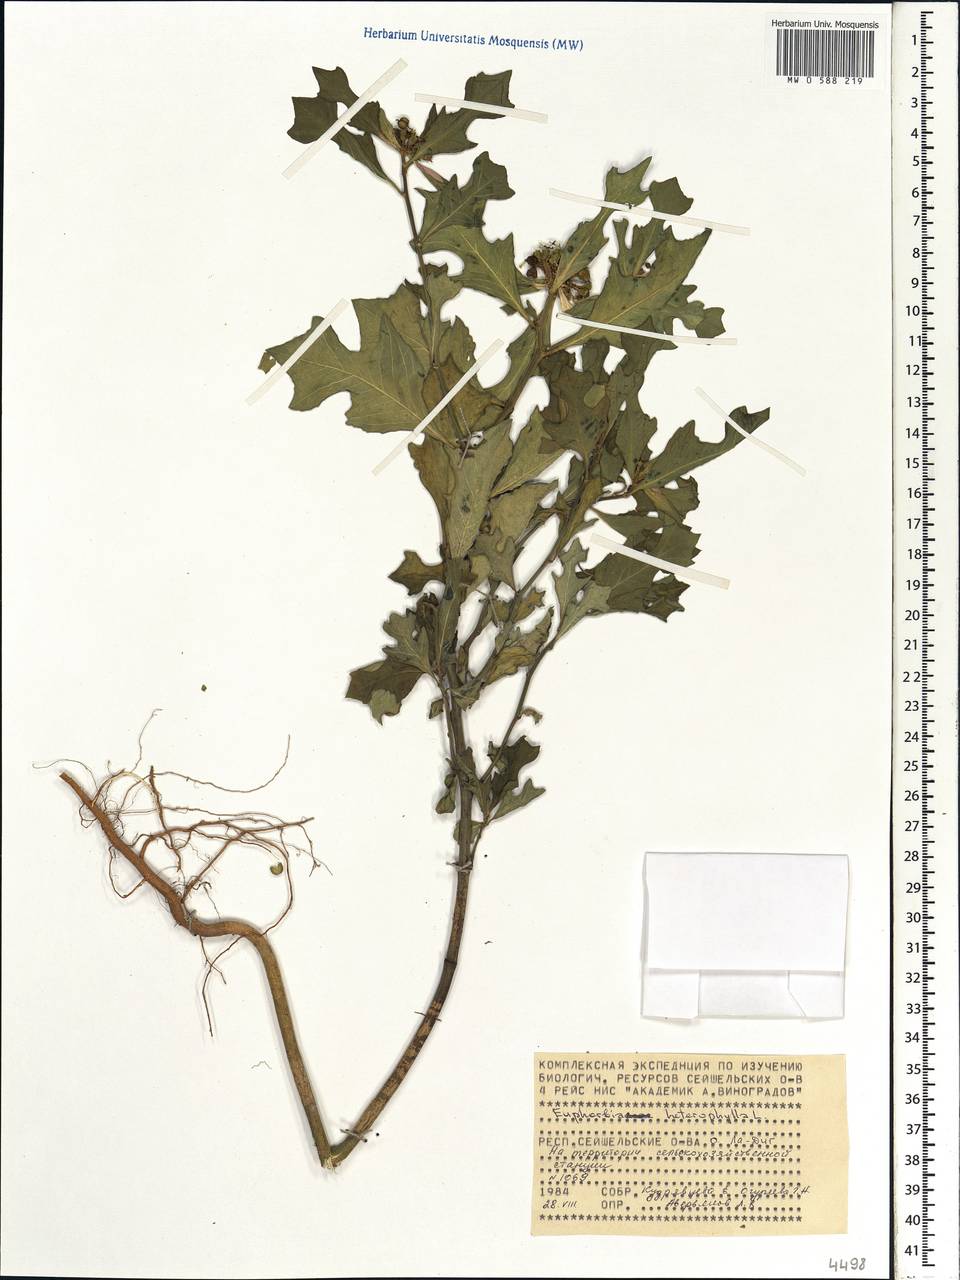 Euphorbia heterophylla L., Africa (AFR) (Seychelles)